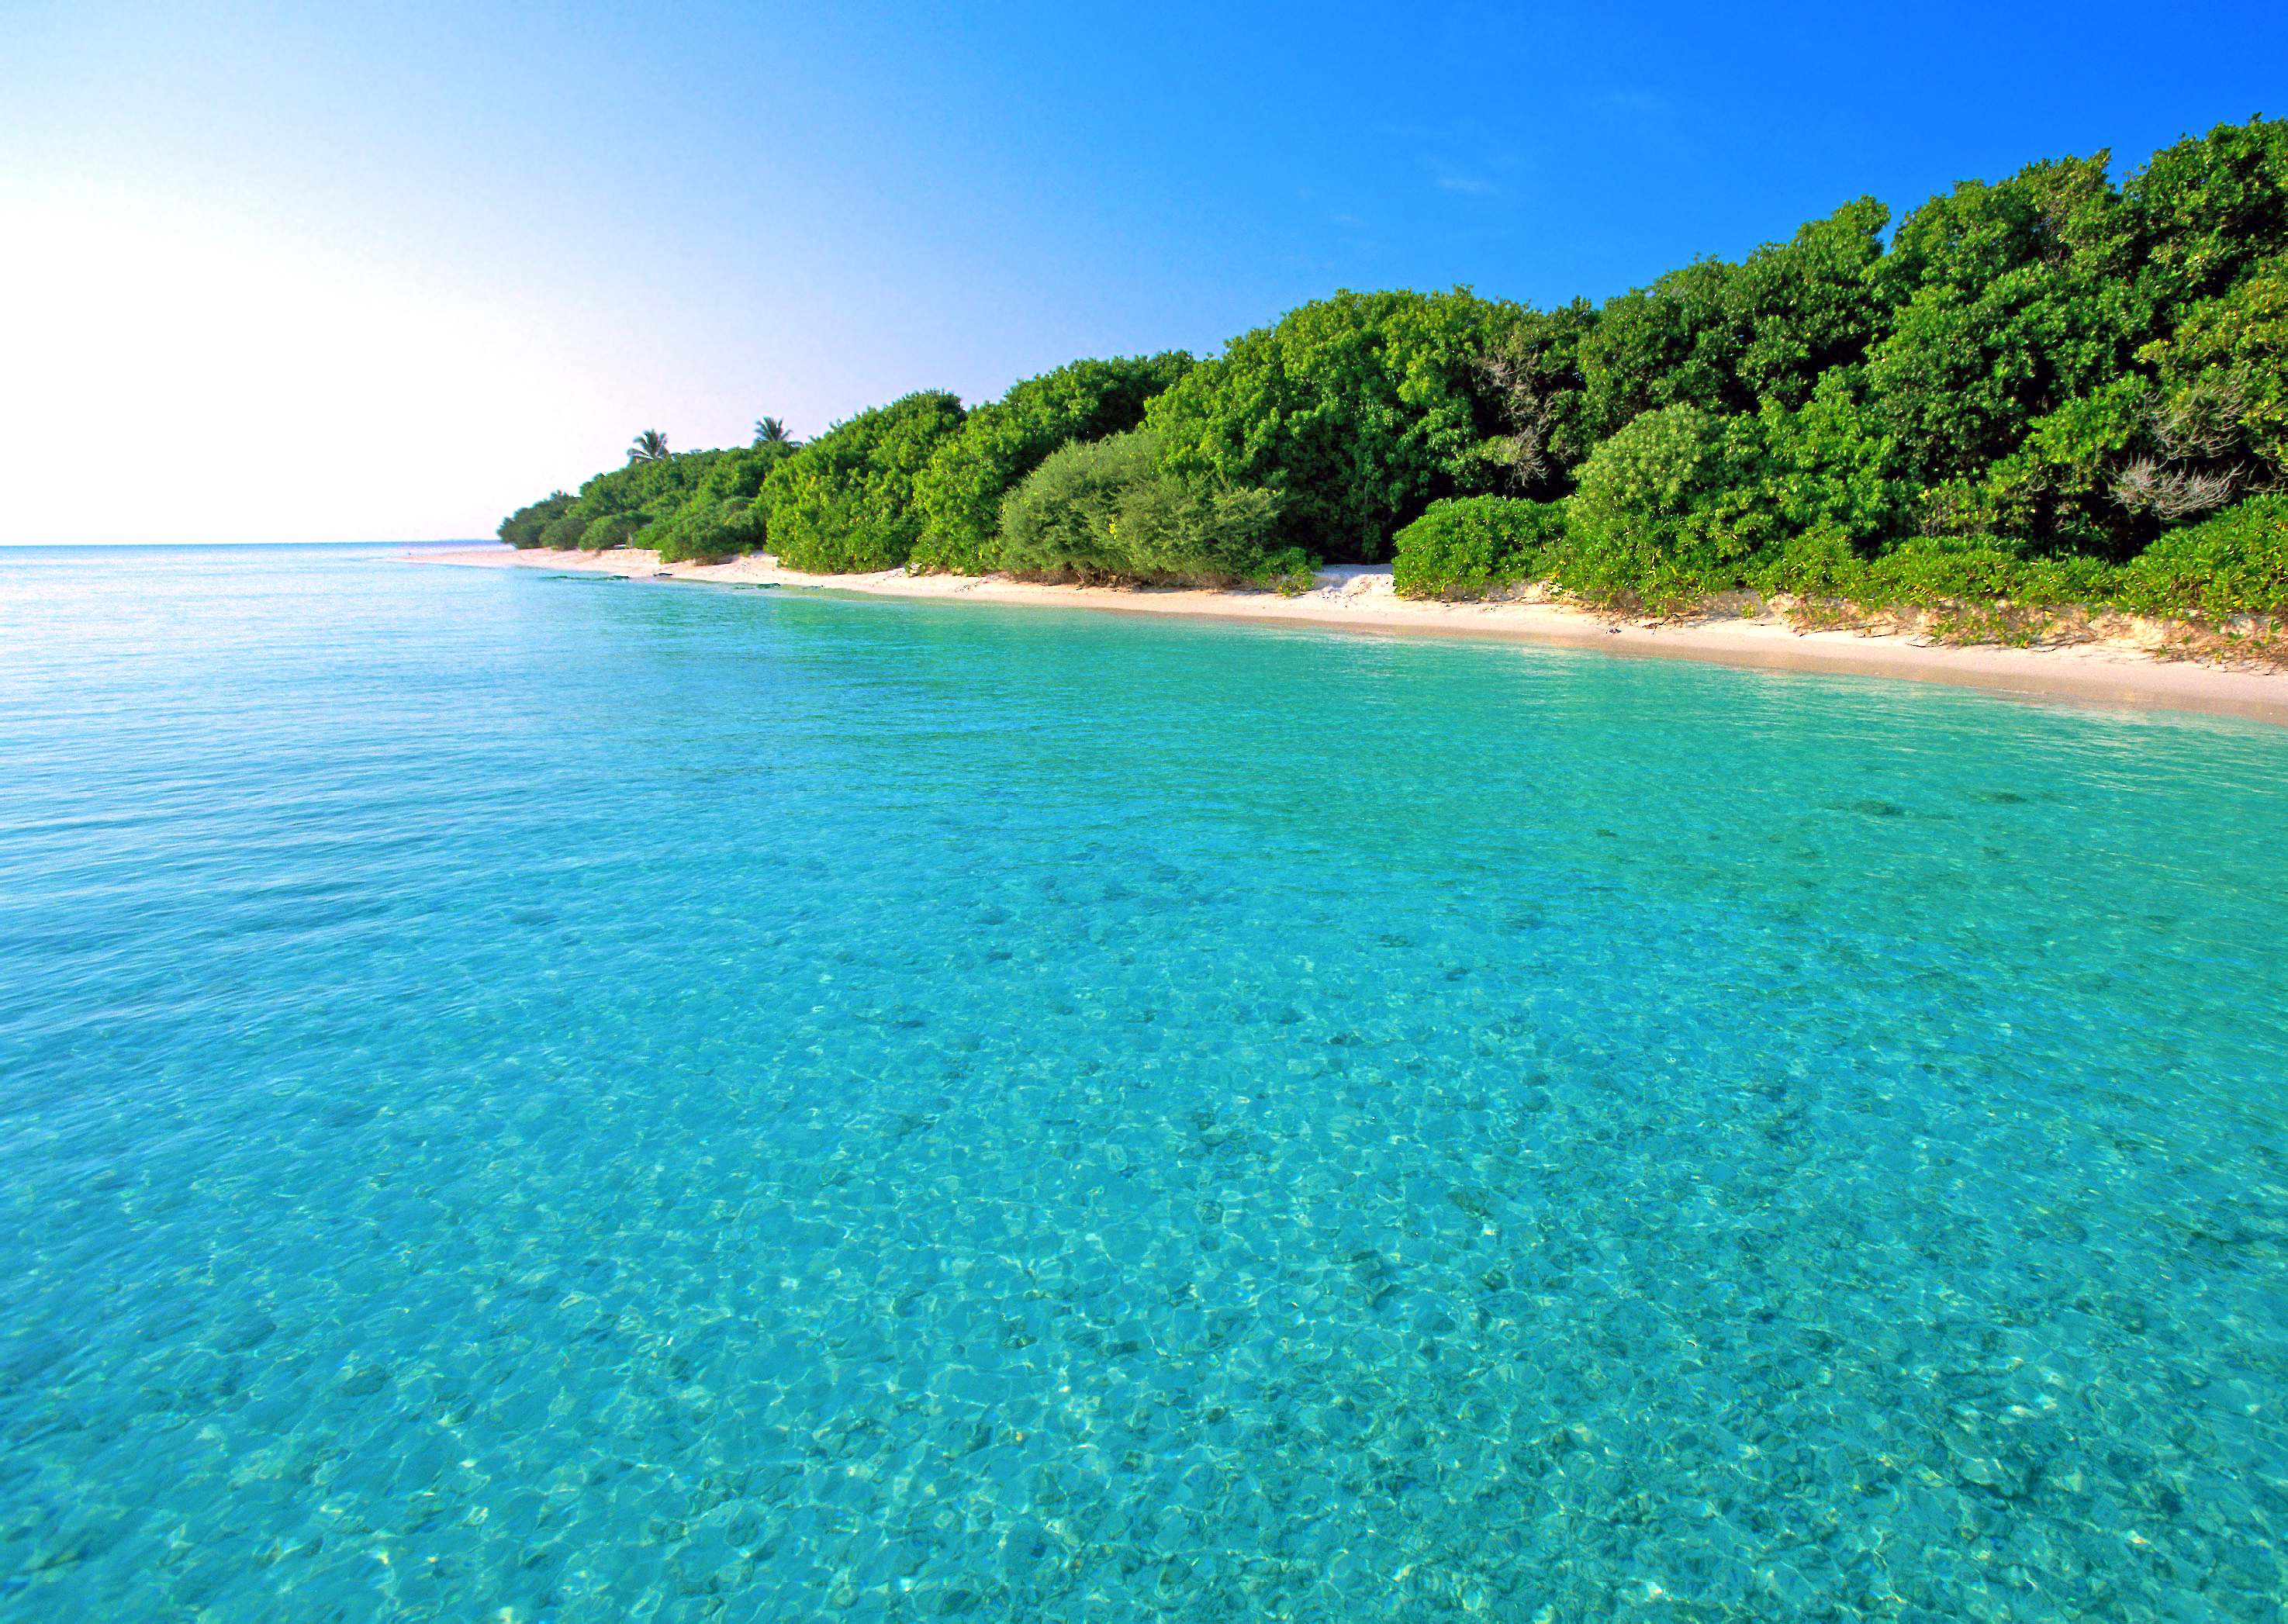 Фото синяя вода лето пляж - бесплатные картинки на Fonwall